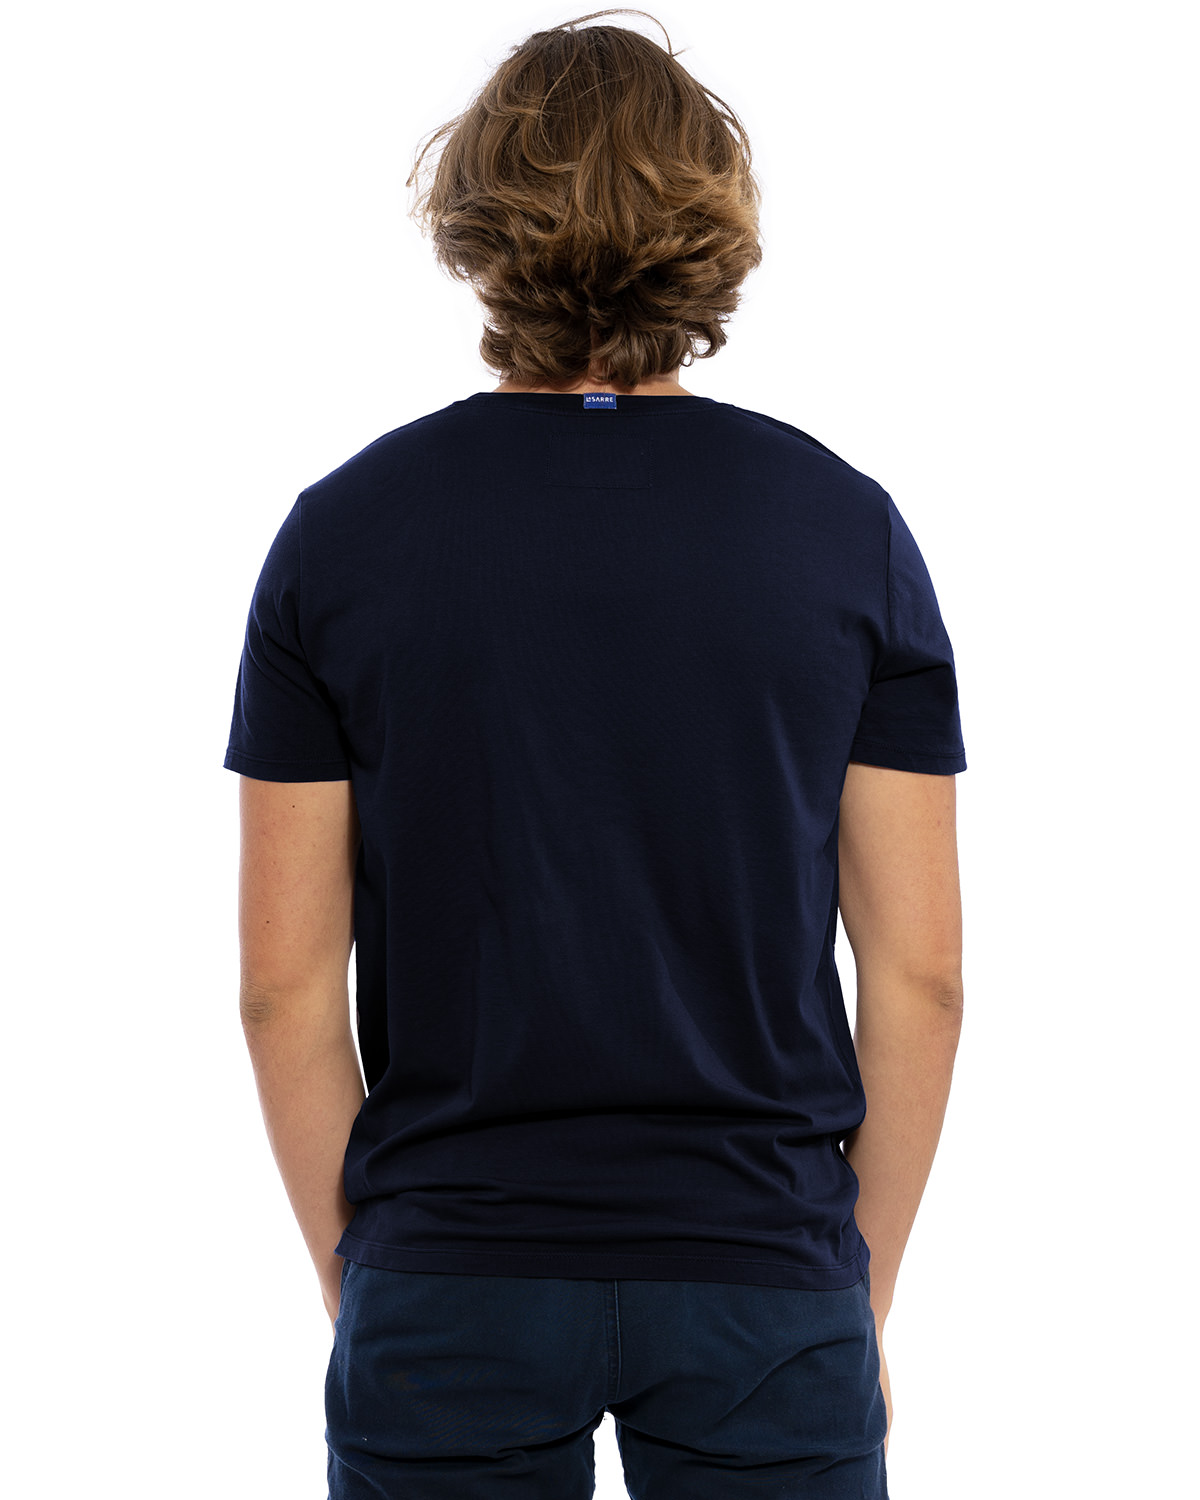 Rücken-Ansicht des hochwertig bestickten Männer T-Shirt „PAUL“ in der Farbe Navy-Blau von der Saarland Marke Lasarre mit Logo-Stickerei von dem LASARRE-Wappen in Blau, Weiß, Rot auf der linken Brust und dem blauen LASARRE Markenzeichen am Saum